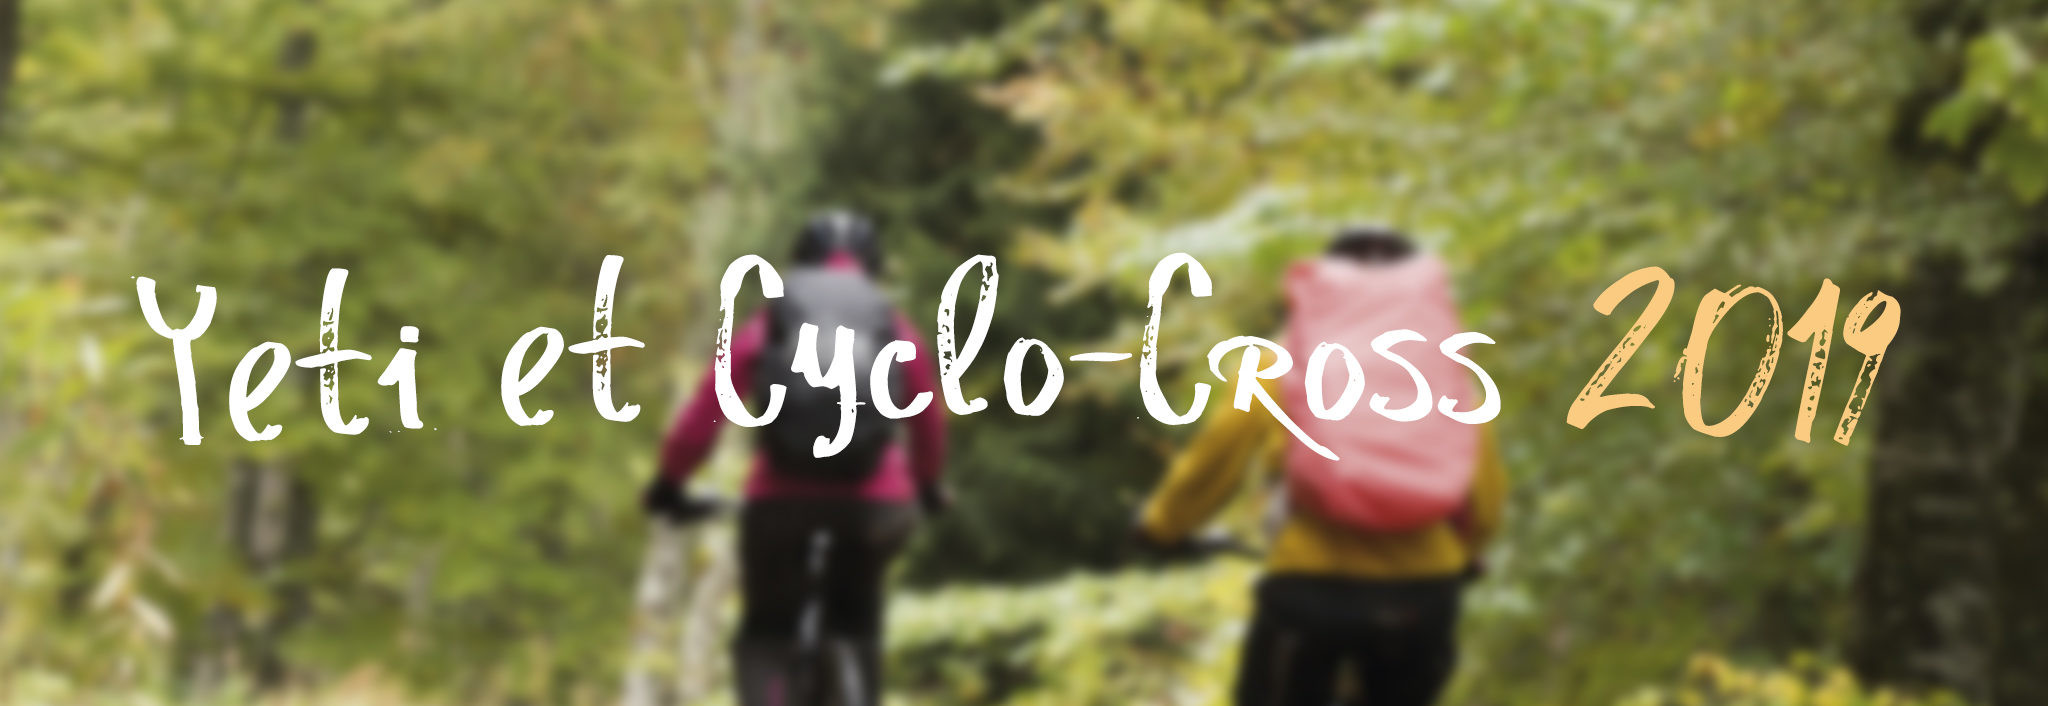 YETI & Cyclo-Cross de la ville de Yutz 2019